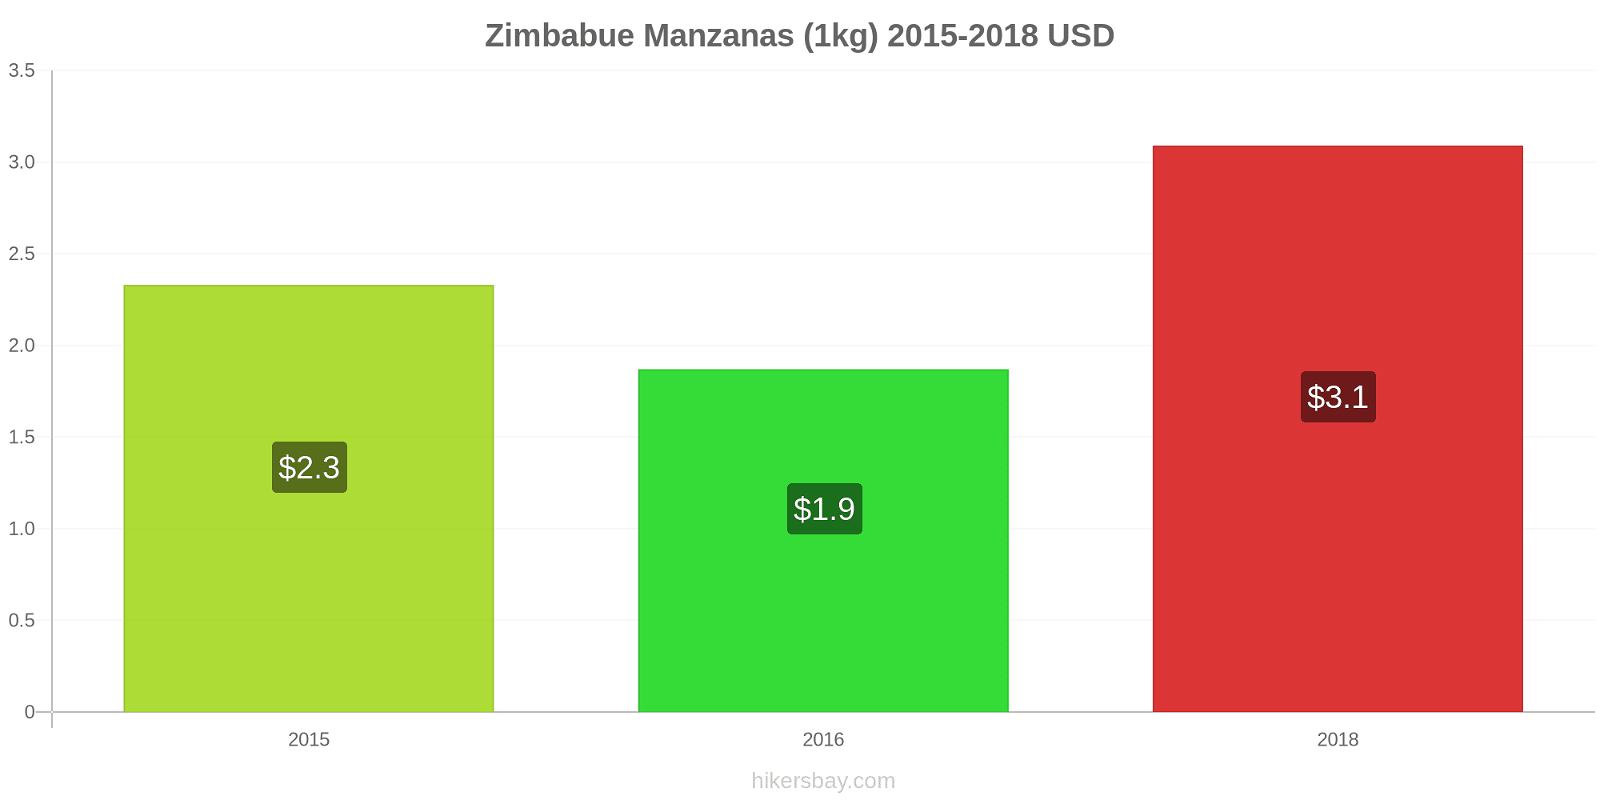 Zimbabue cambios de precios Manzanas (1kg) hikersbay.com